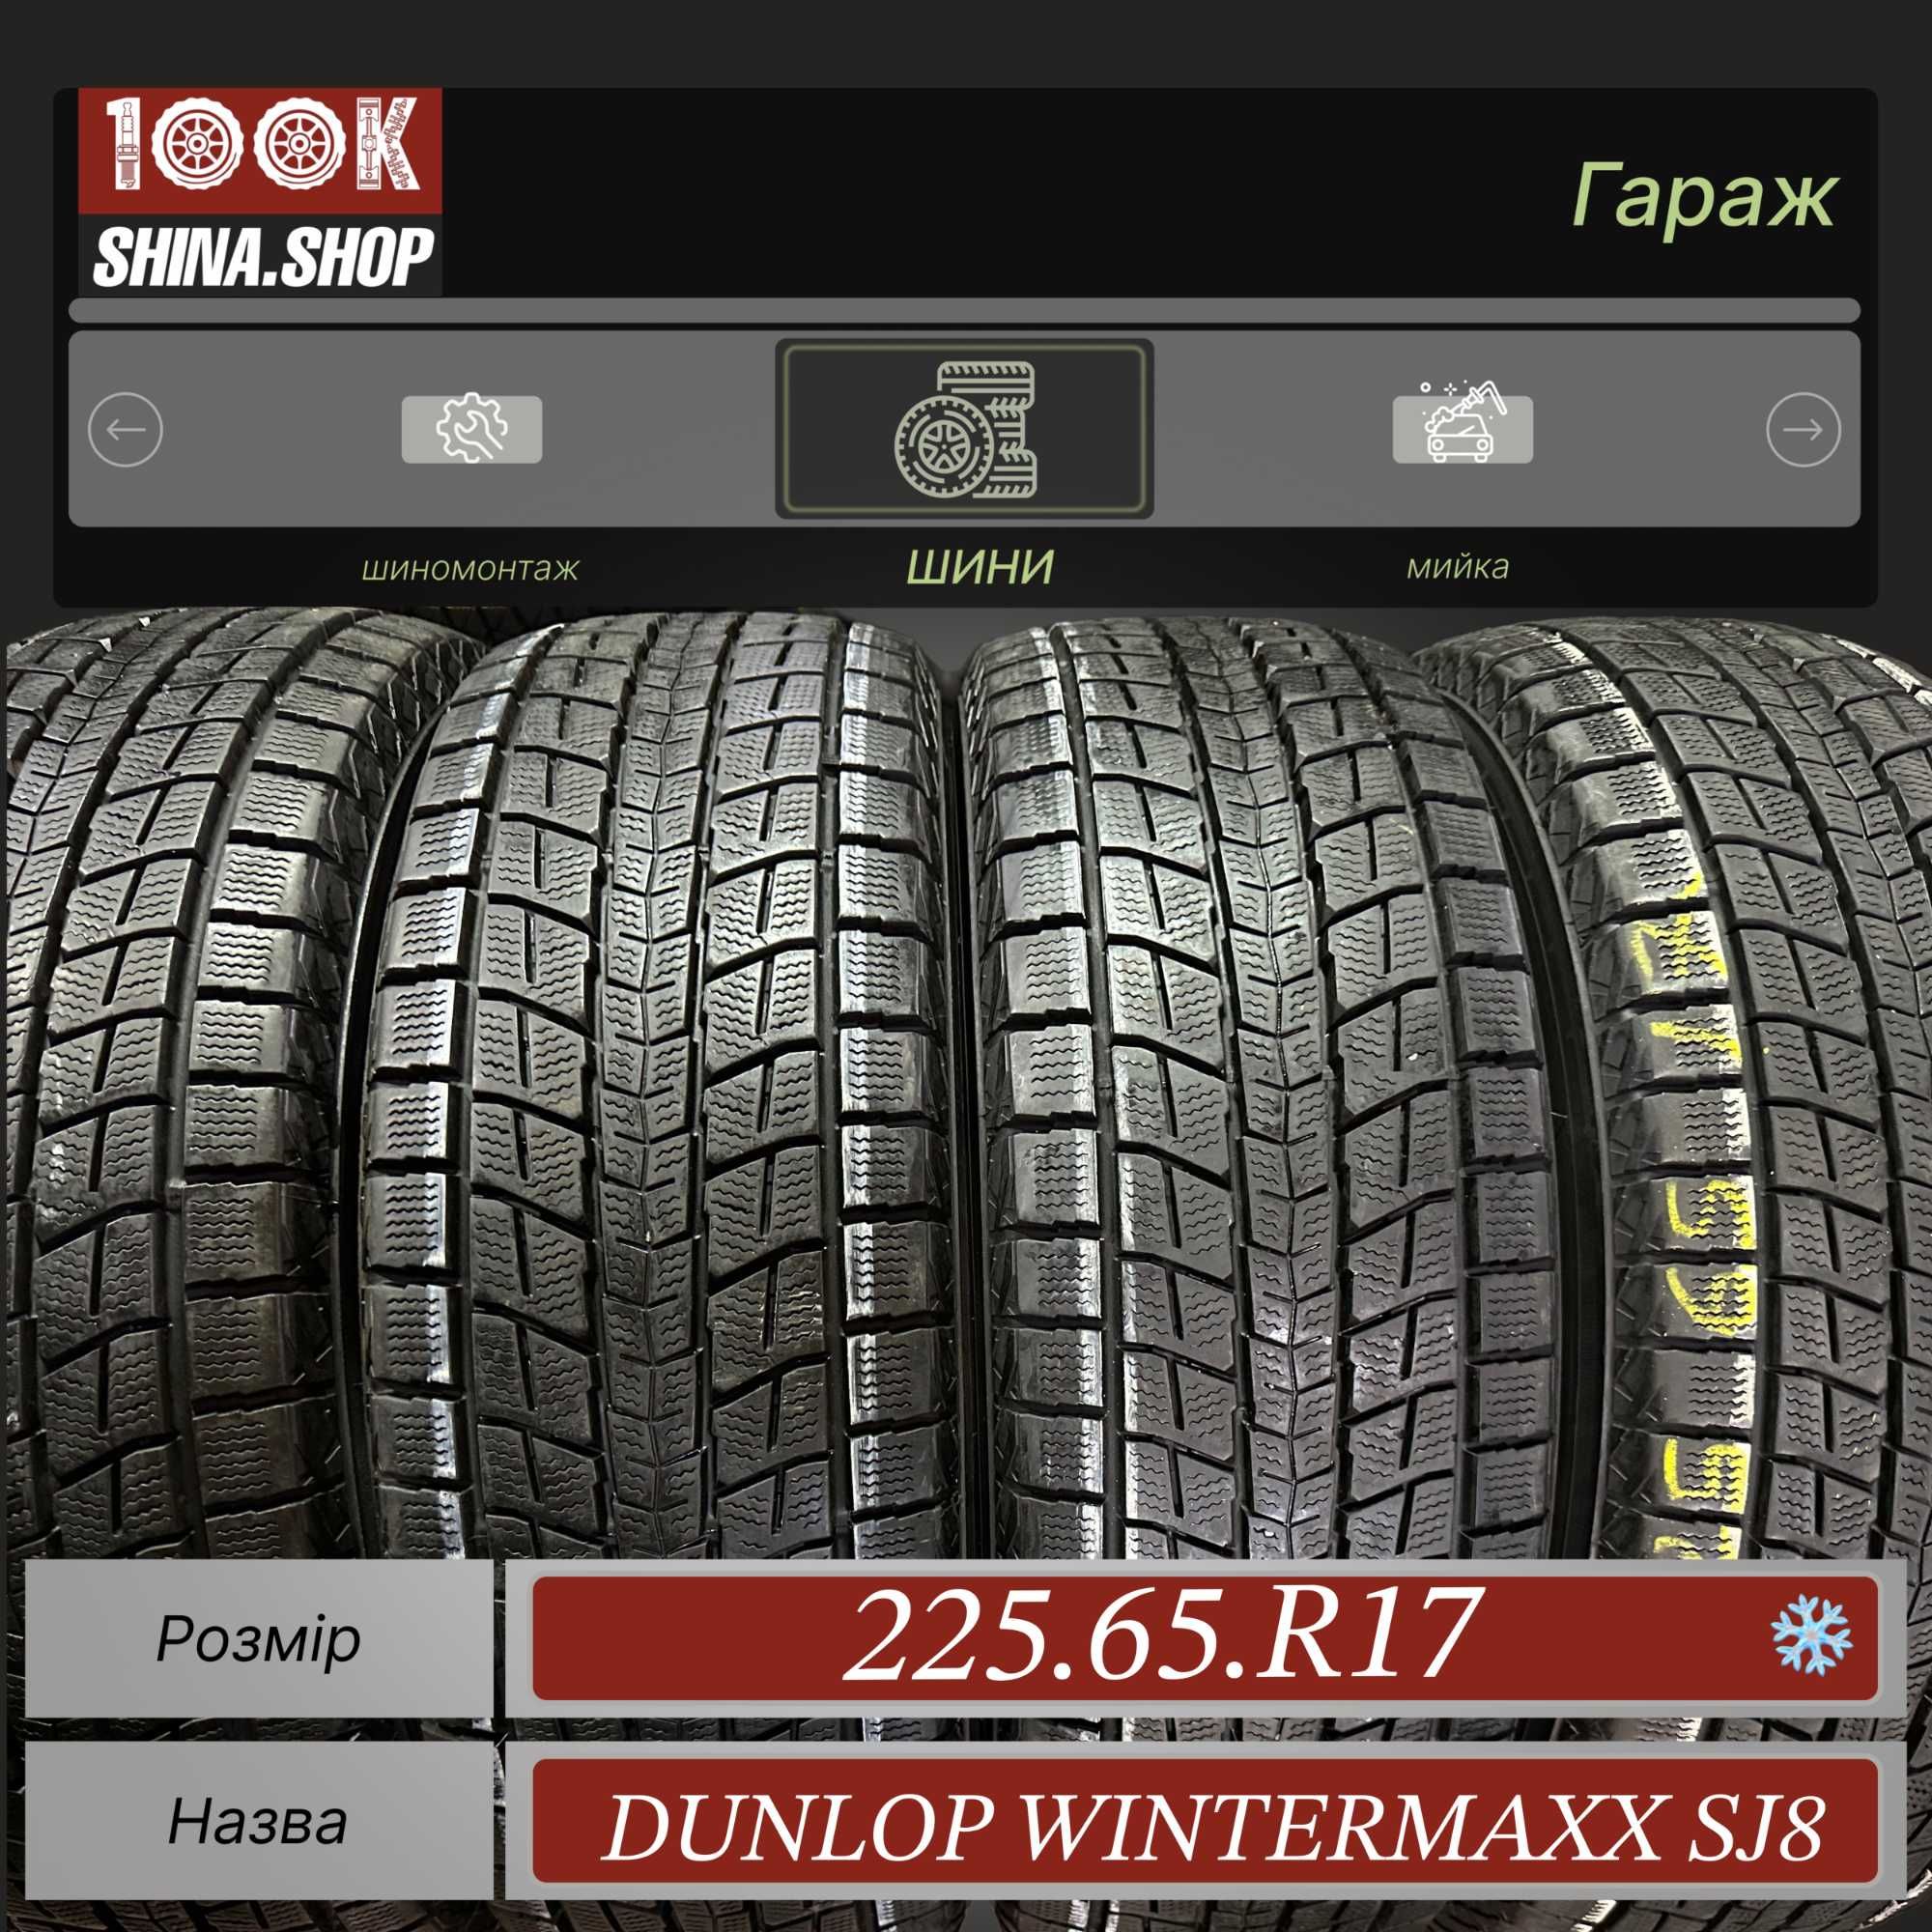 Шины БУ 225 65 R 17 Dunlop WinterMaxx SJ 8 Резина зима Япония